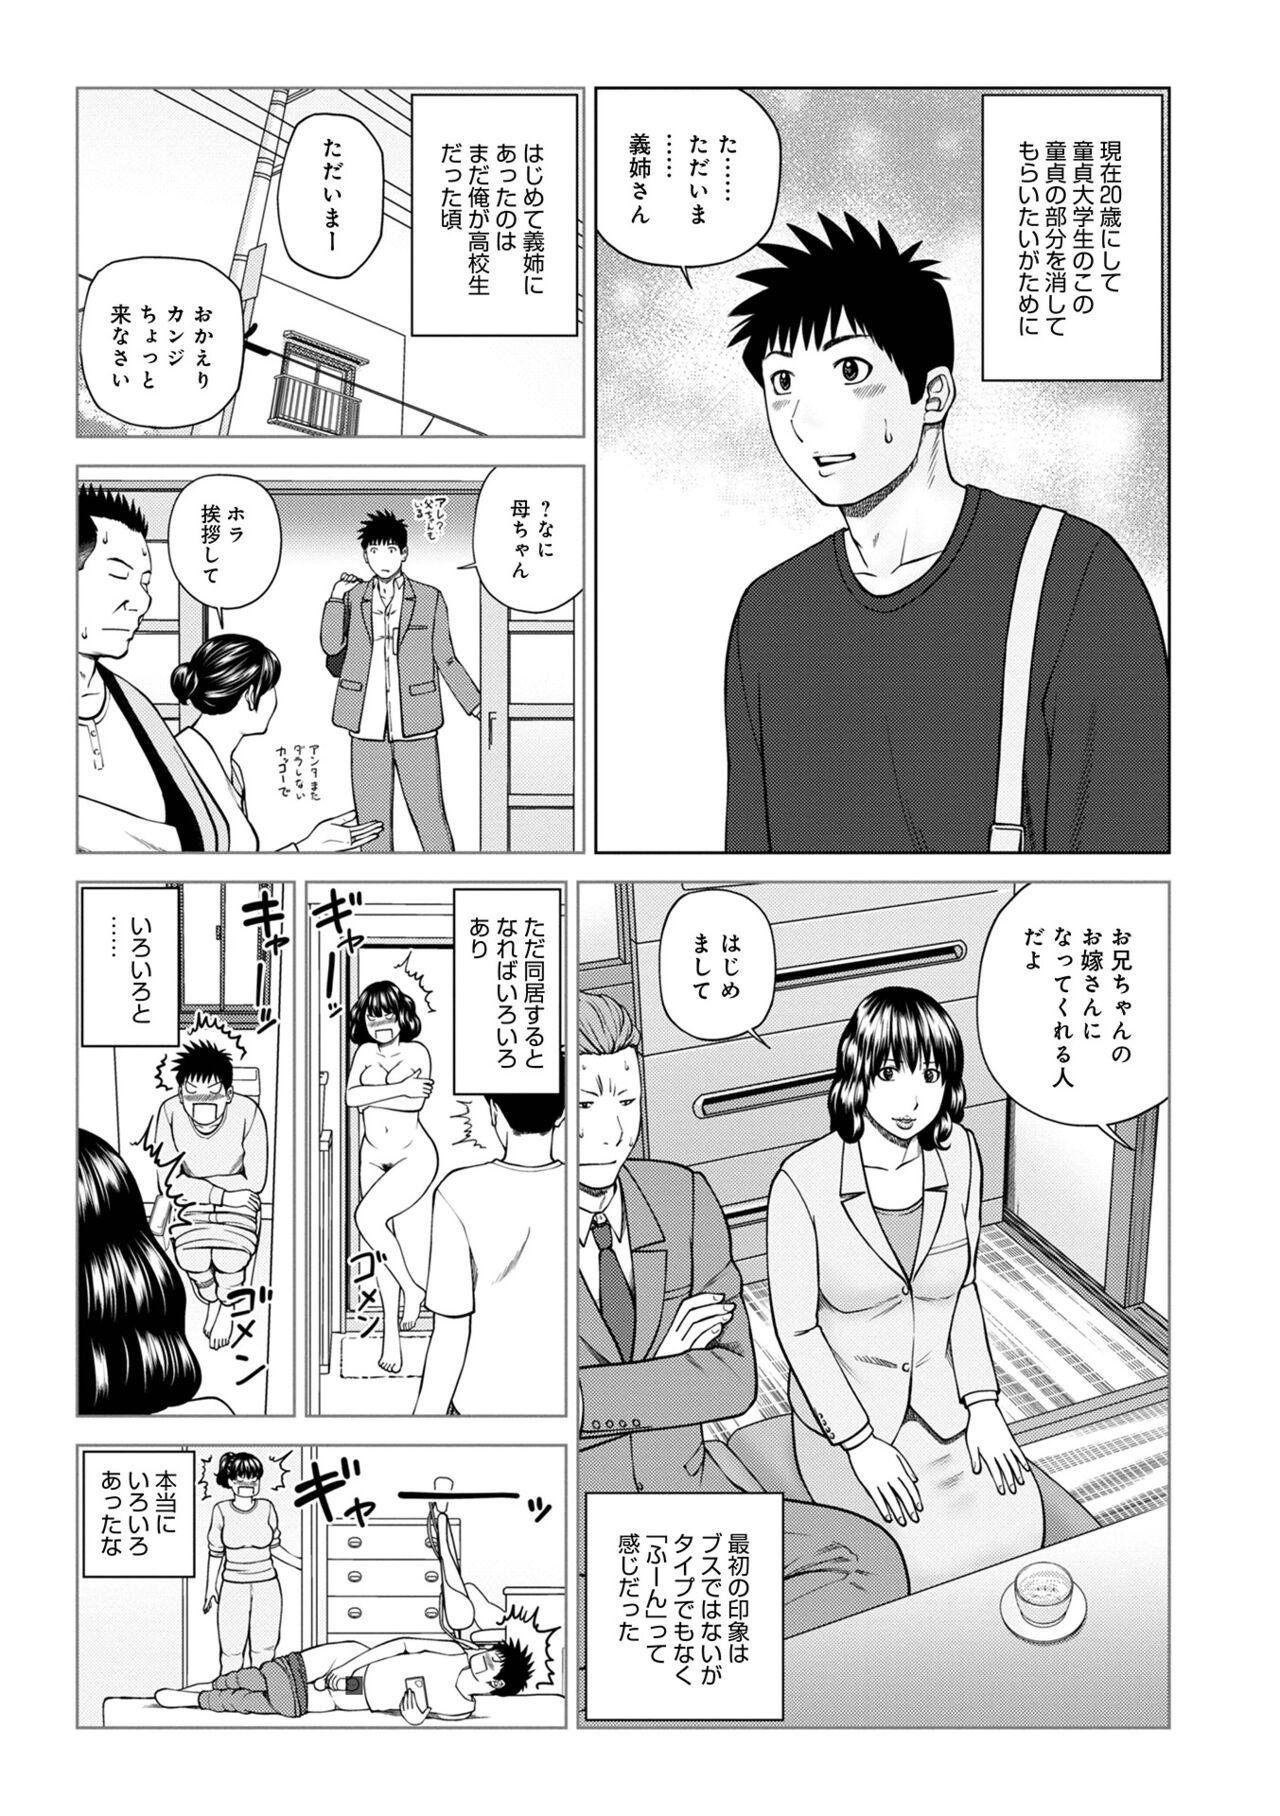 Style WEB Ban COMIC Gekiyaba! Vol. 153 Pervs - Page 5